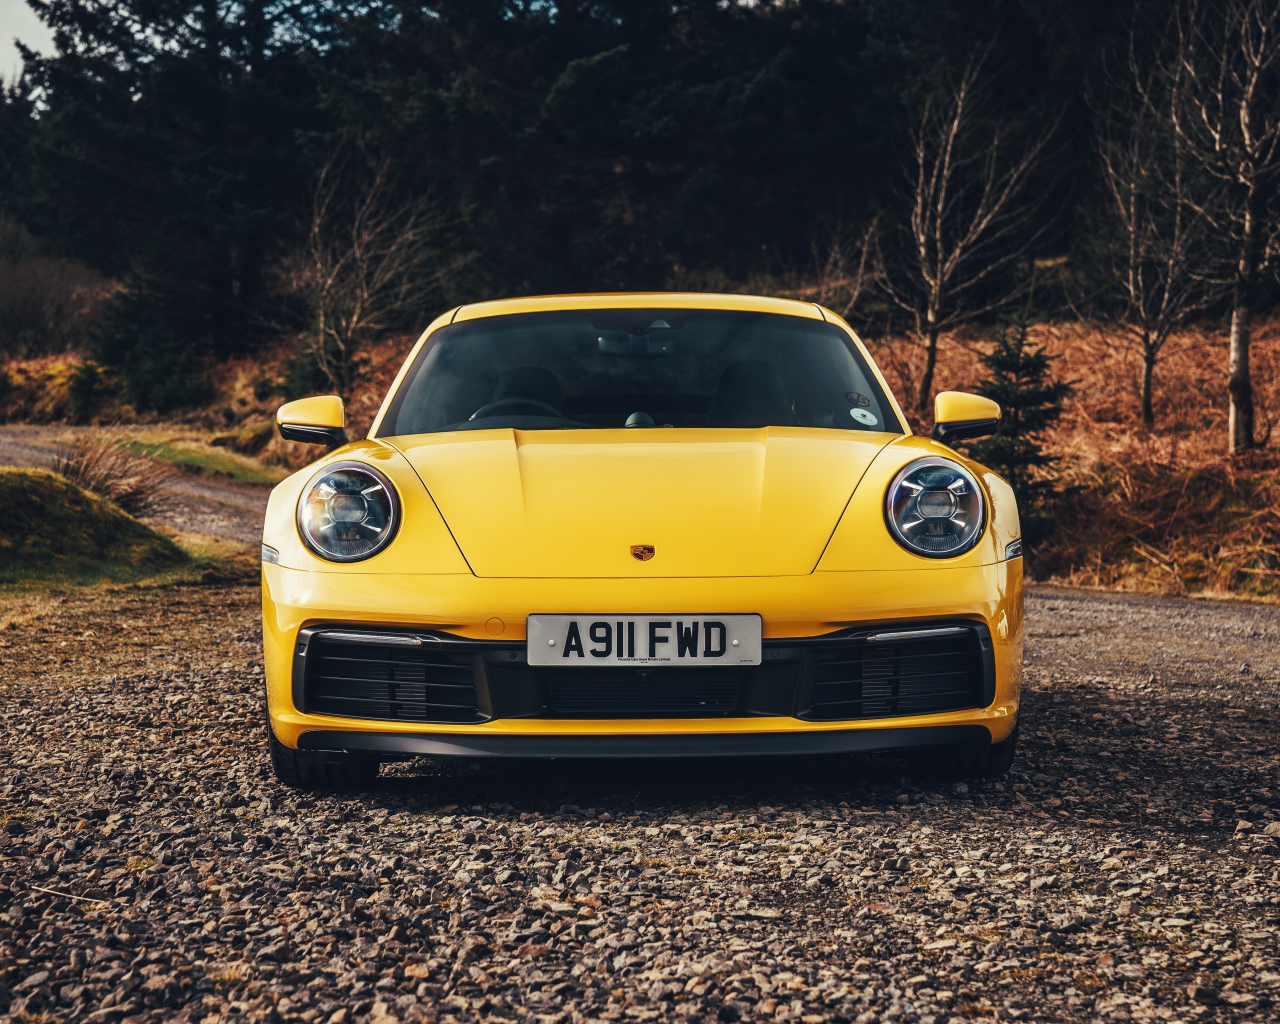 Желтый спортивный автомобиль Porsche 911 Carrera 4S 2019 года